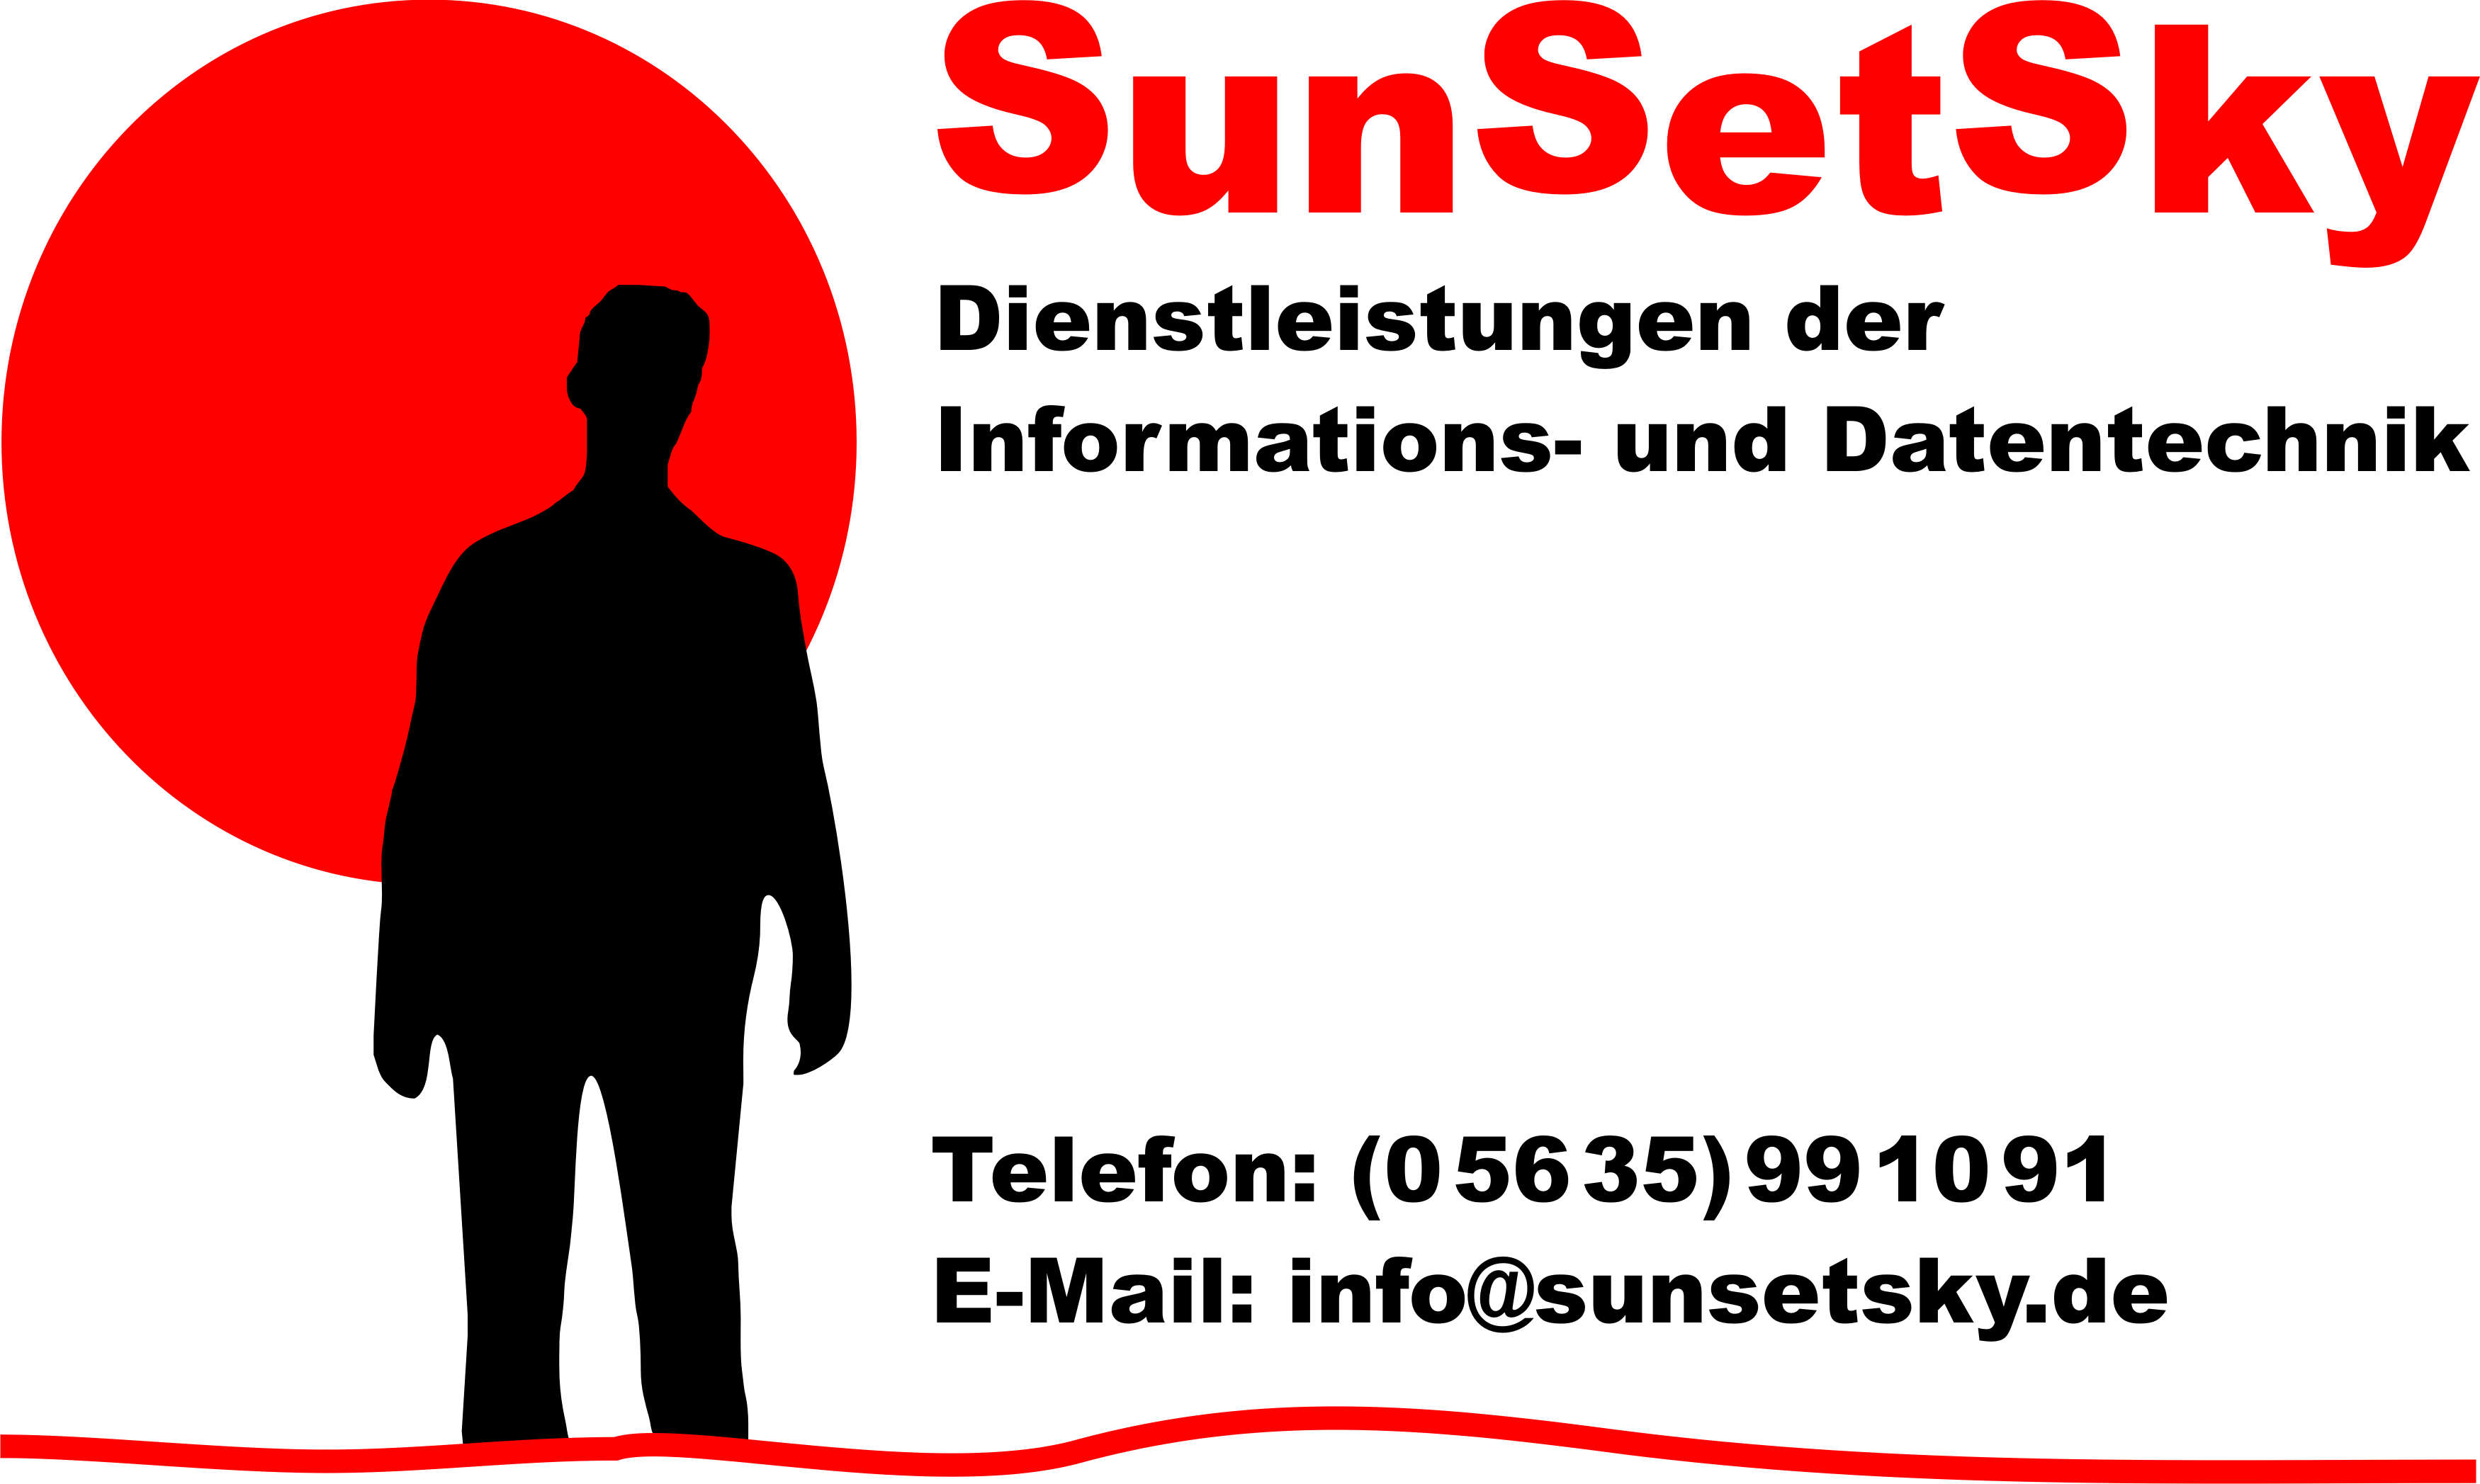 SunSetSky IT Dienstleistungen